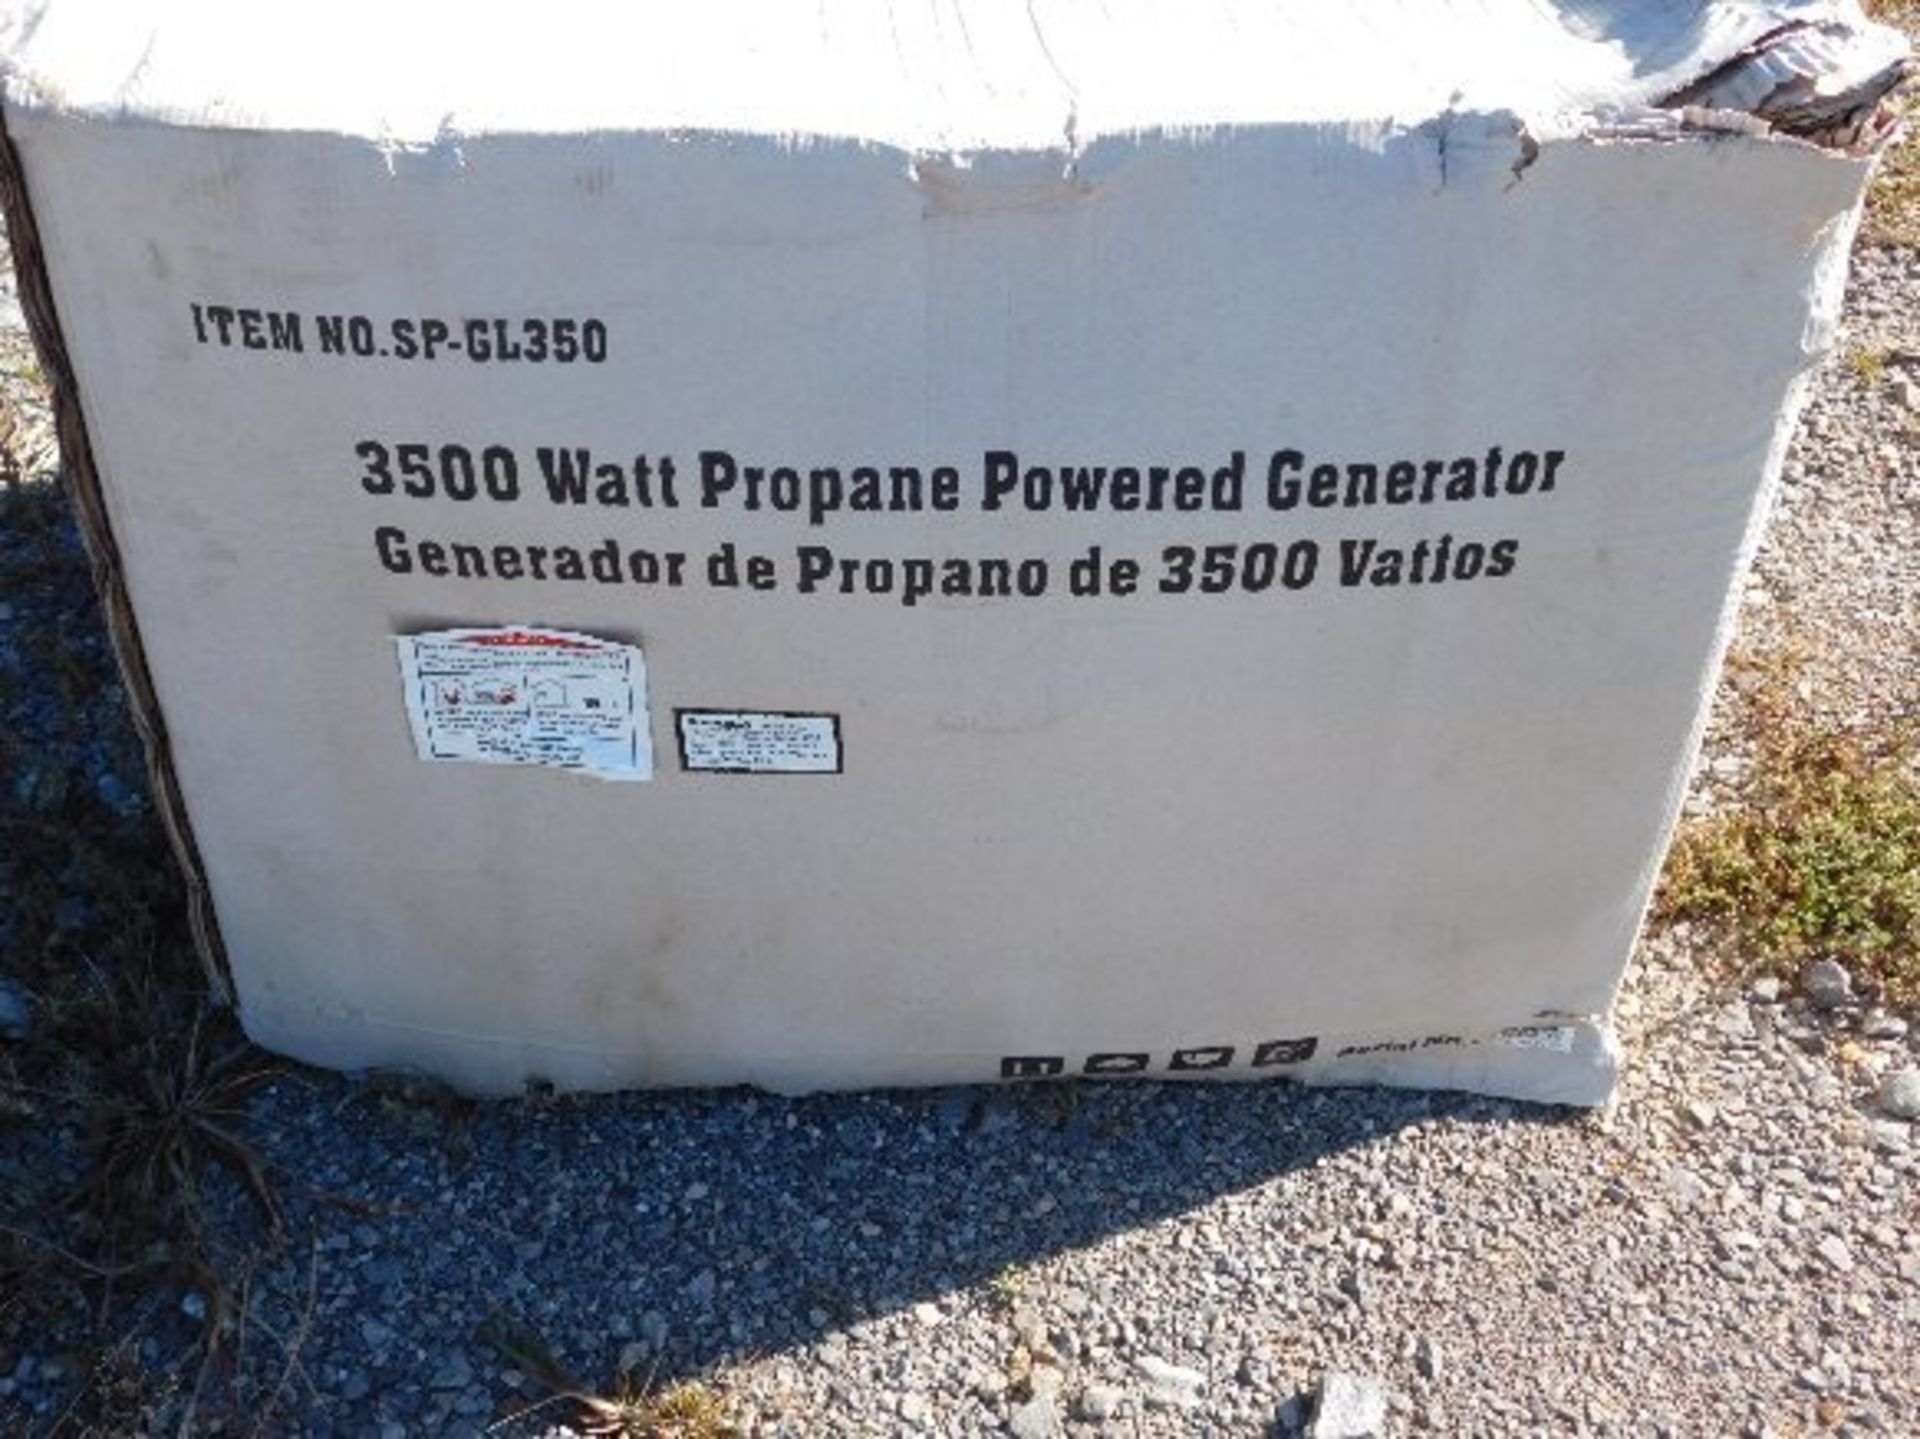 Steele 3500 Watt Propane Generator, Mdl. SP-GL350 - Image 2 of 2